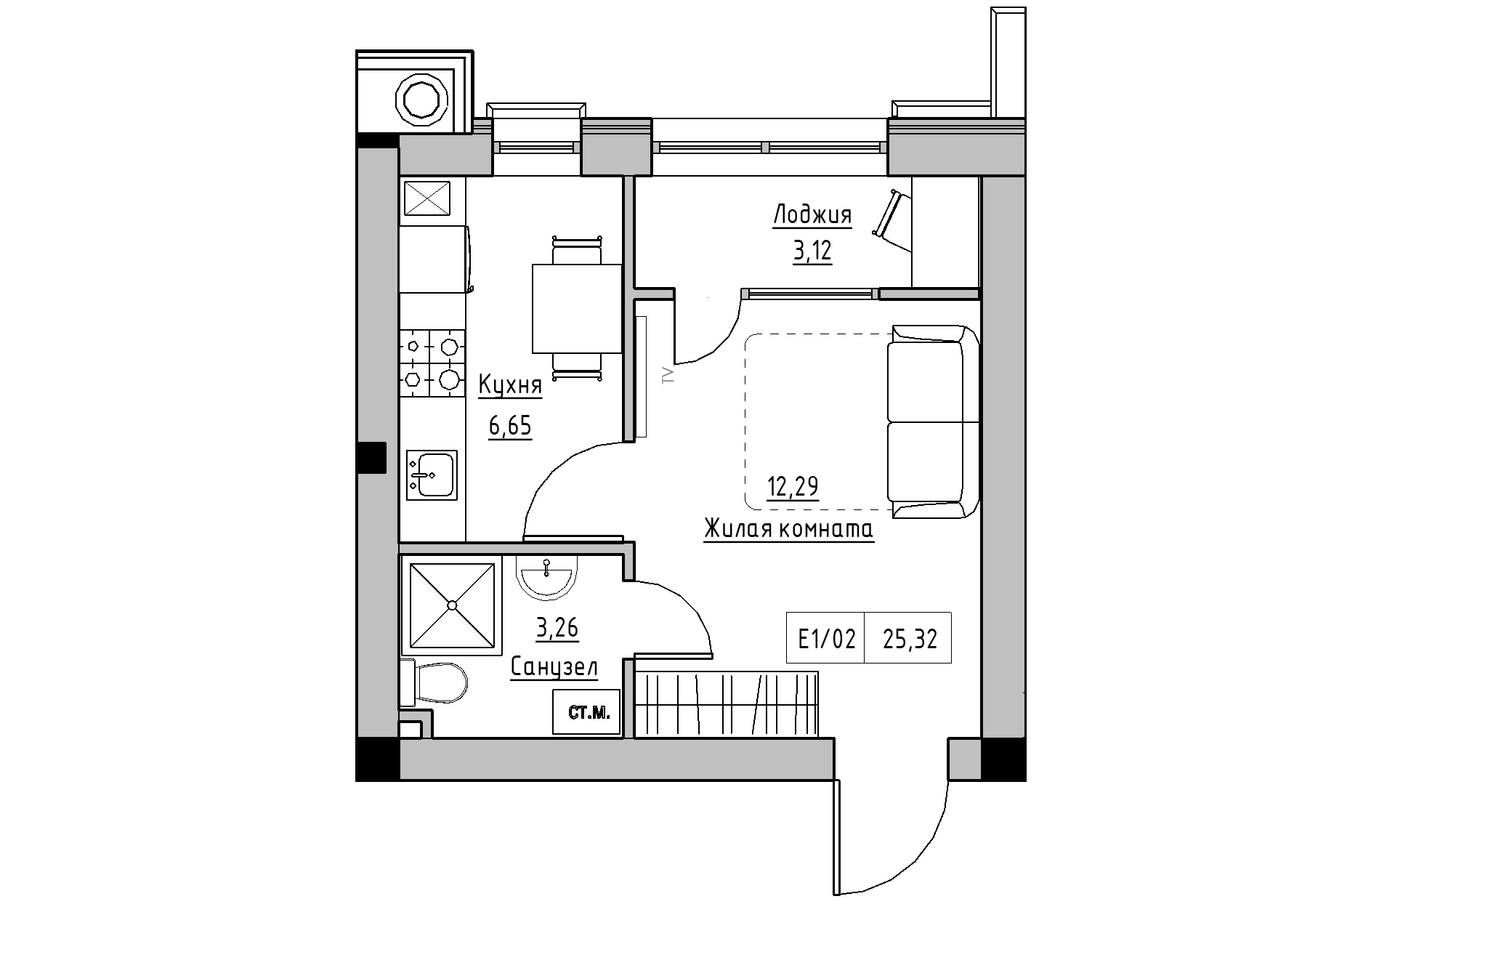 Планировка 1-к квартира площей 25.32м2, KS-010-05/0004.